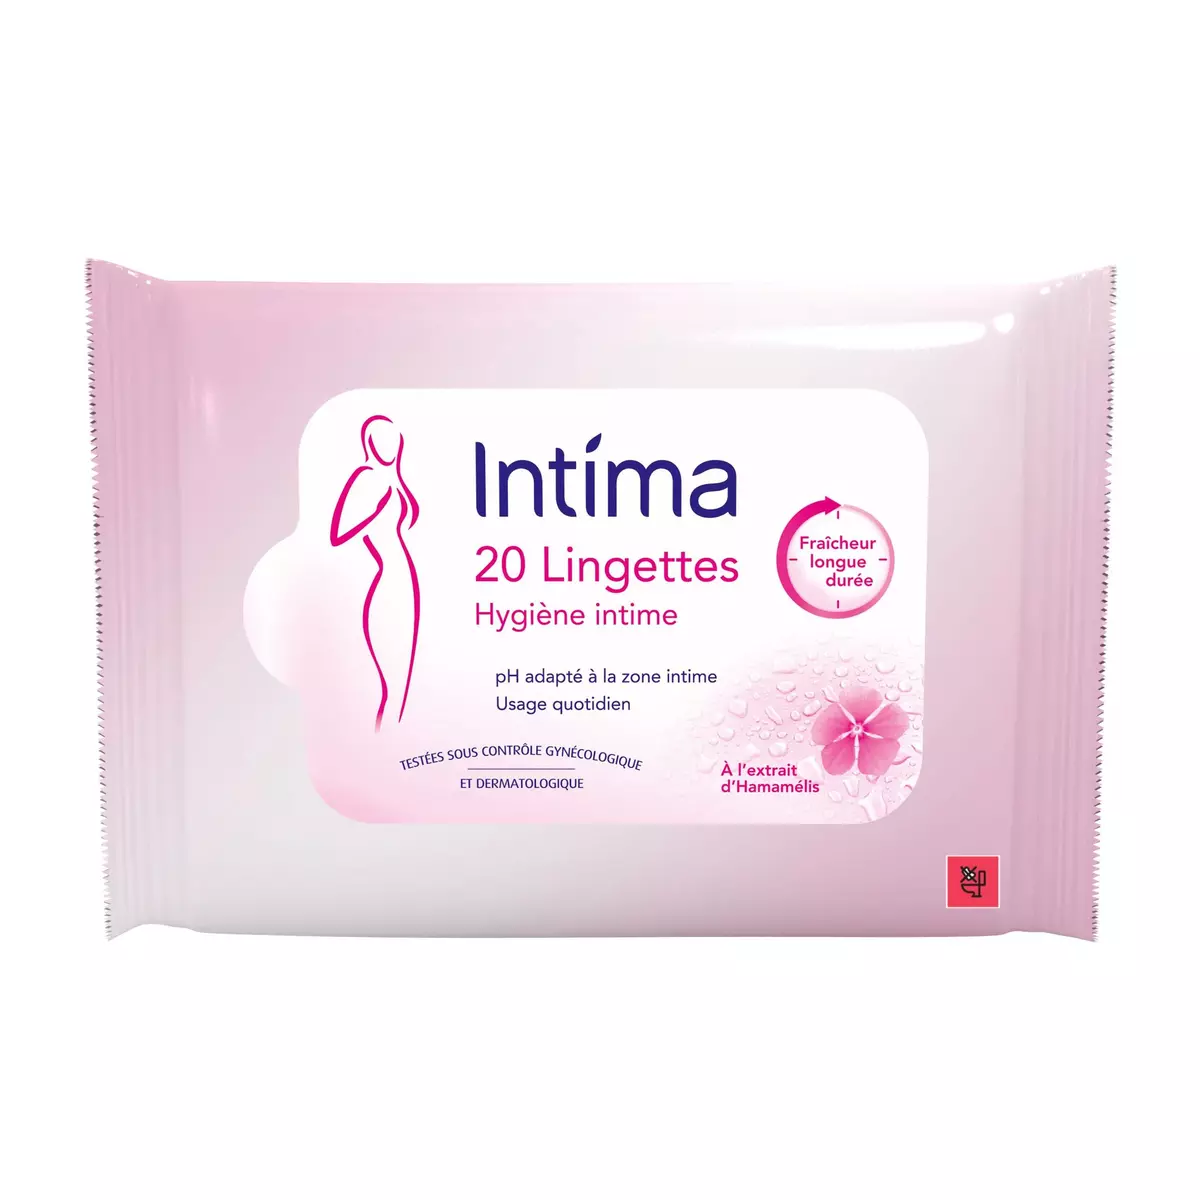 INTIMA Lingettes hygiène intime fraîcheur longue durée à l'extrait d'hamamélis 20 lingettes